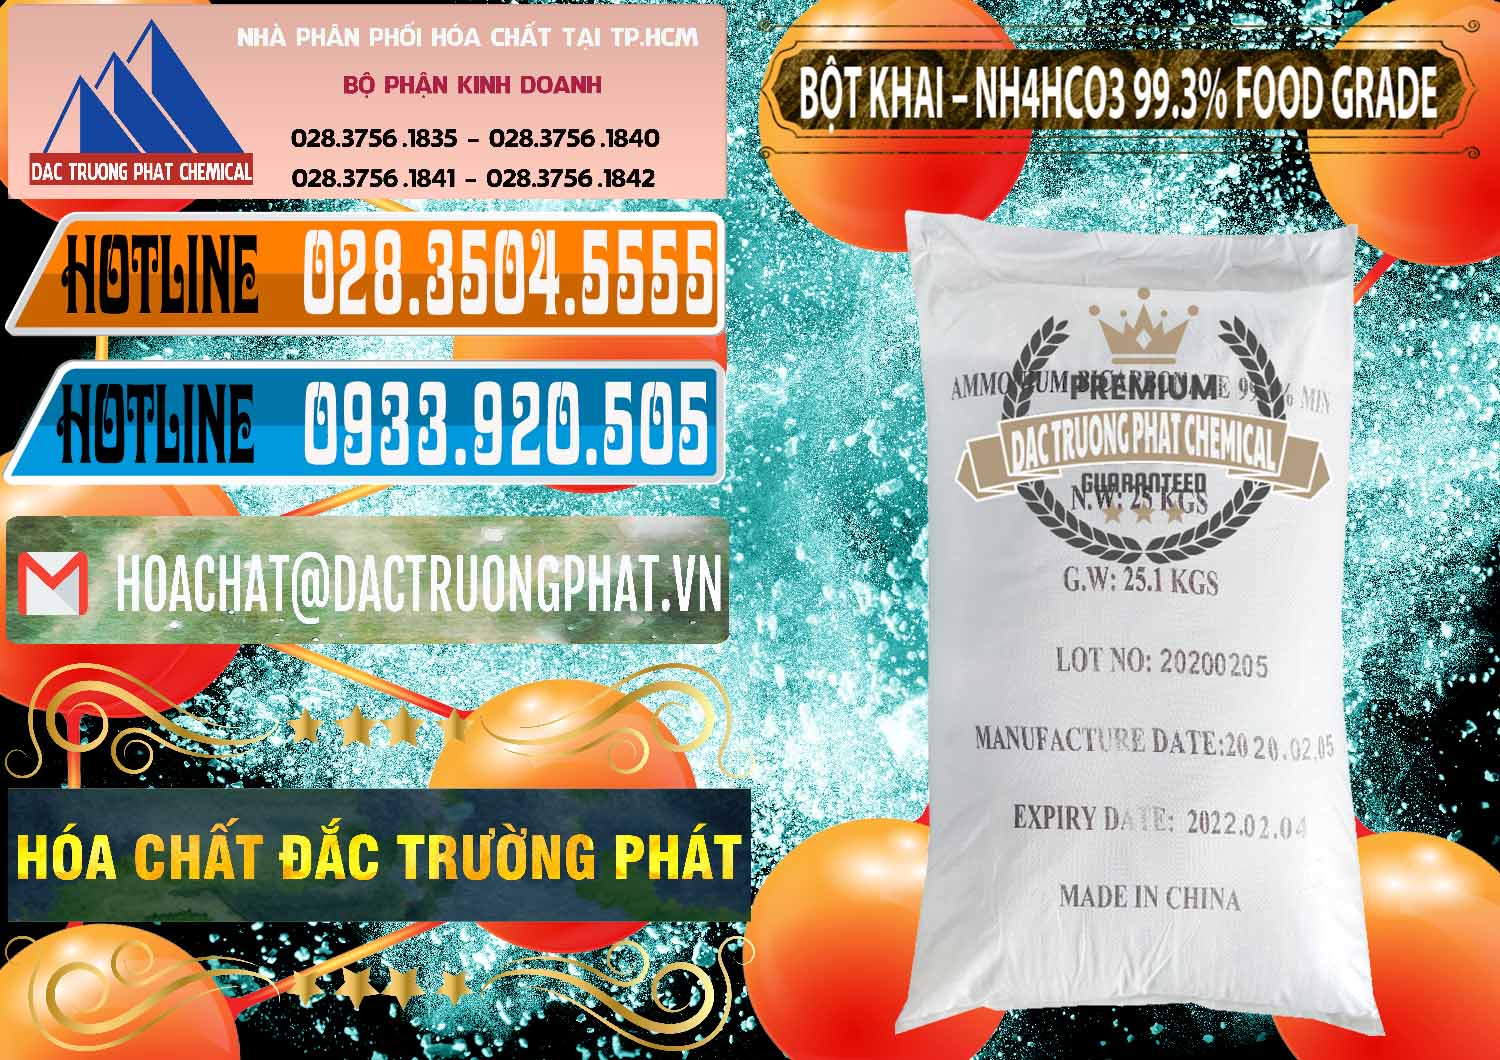 Công ty chuyên bán & phân phối Ammonium Bicarbonate – Bột Khai NH4HCO3 Food Grade Trung Quốc China - 0019 - Đơn vị cung cấp & phân phối hóa chất tại TP.HCM - stmp.net